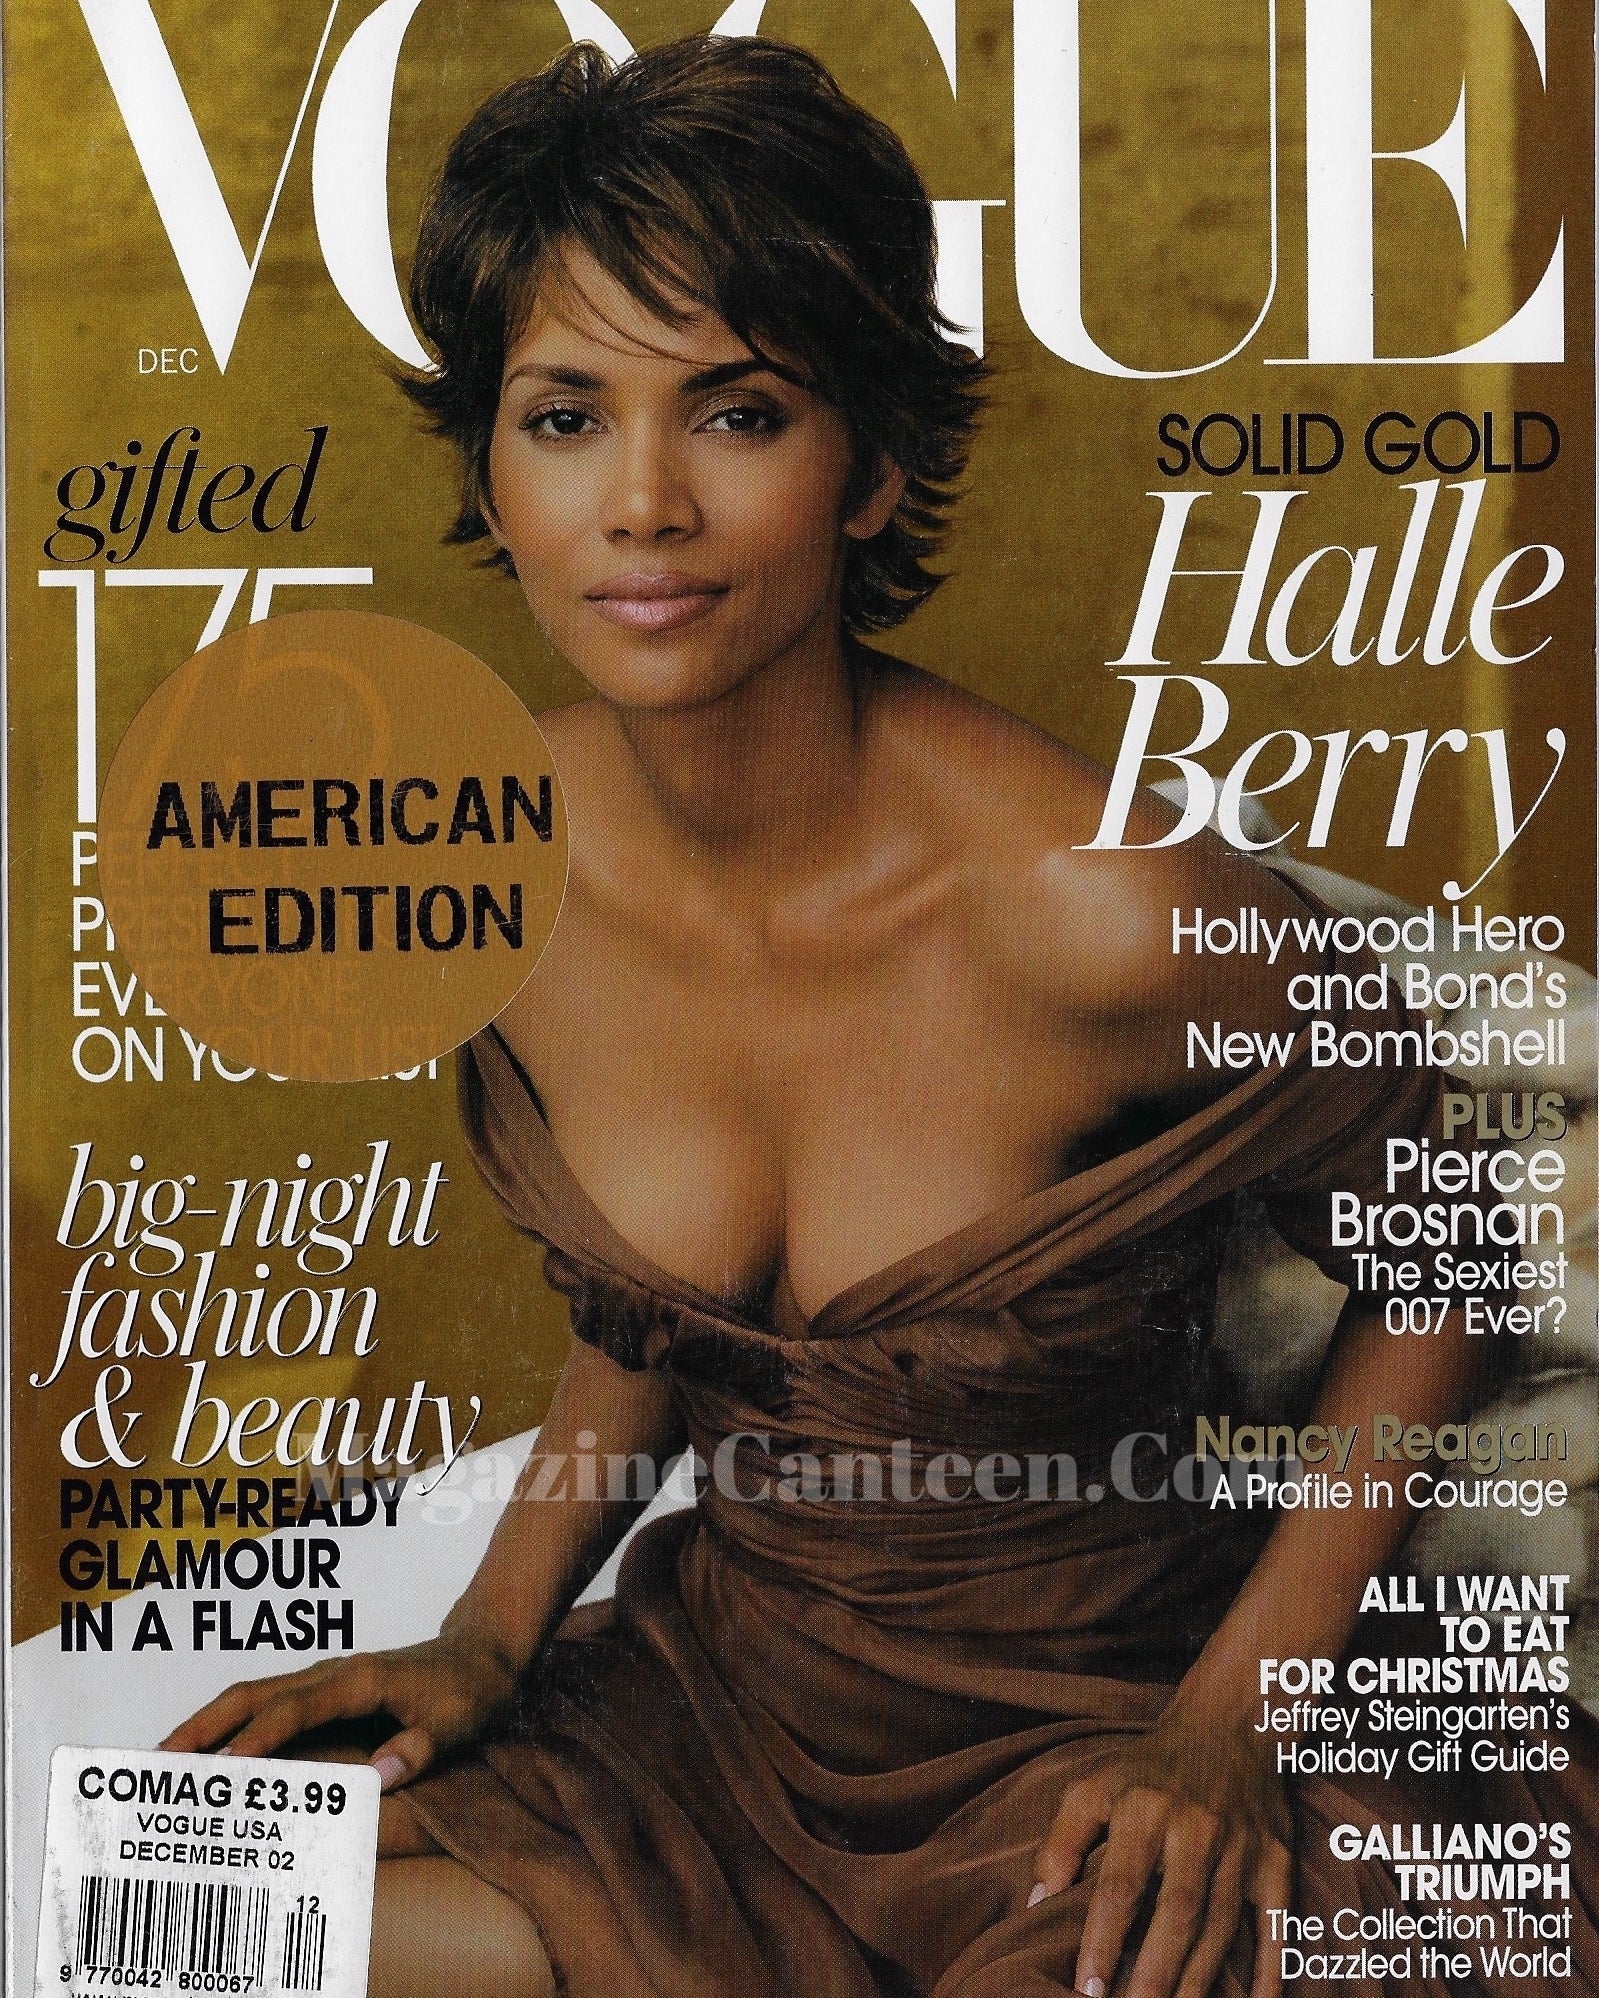 Vogue USA Magazine December 2002 - Halle Berry